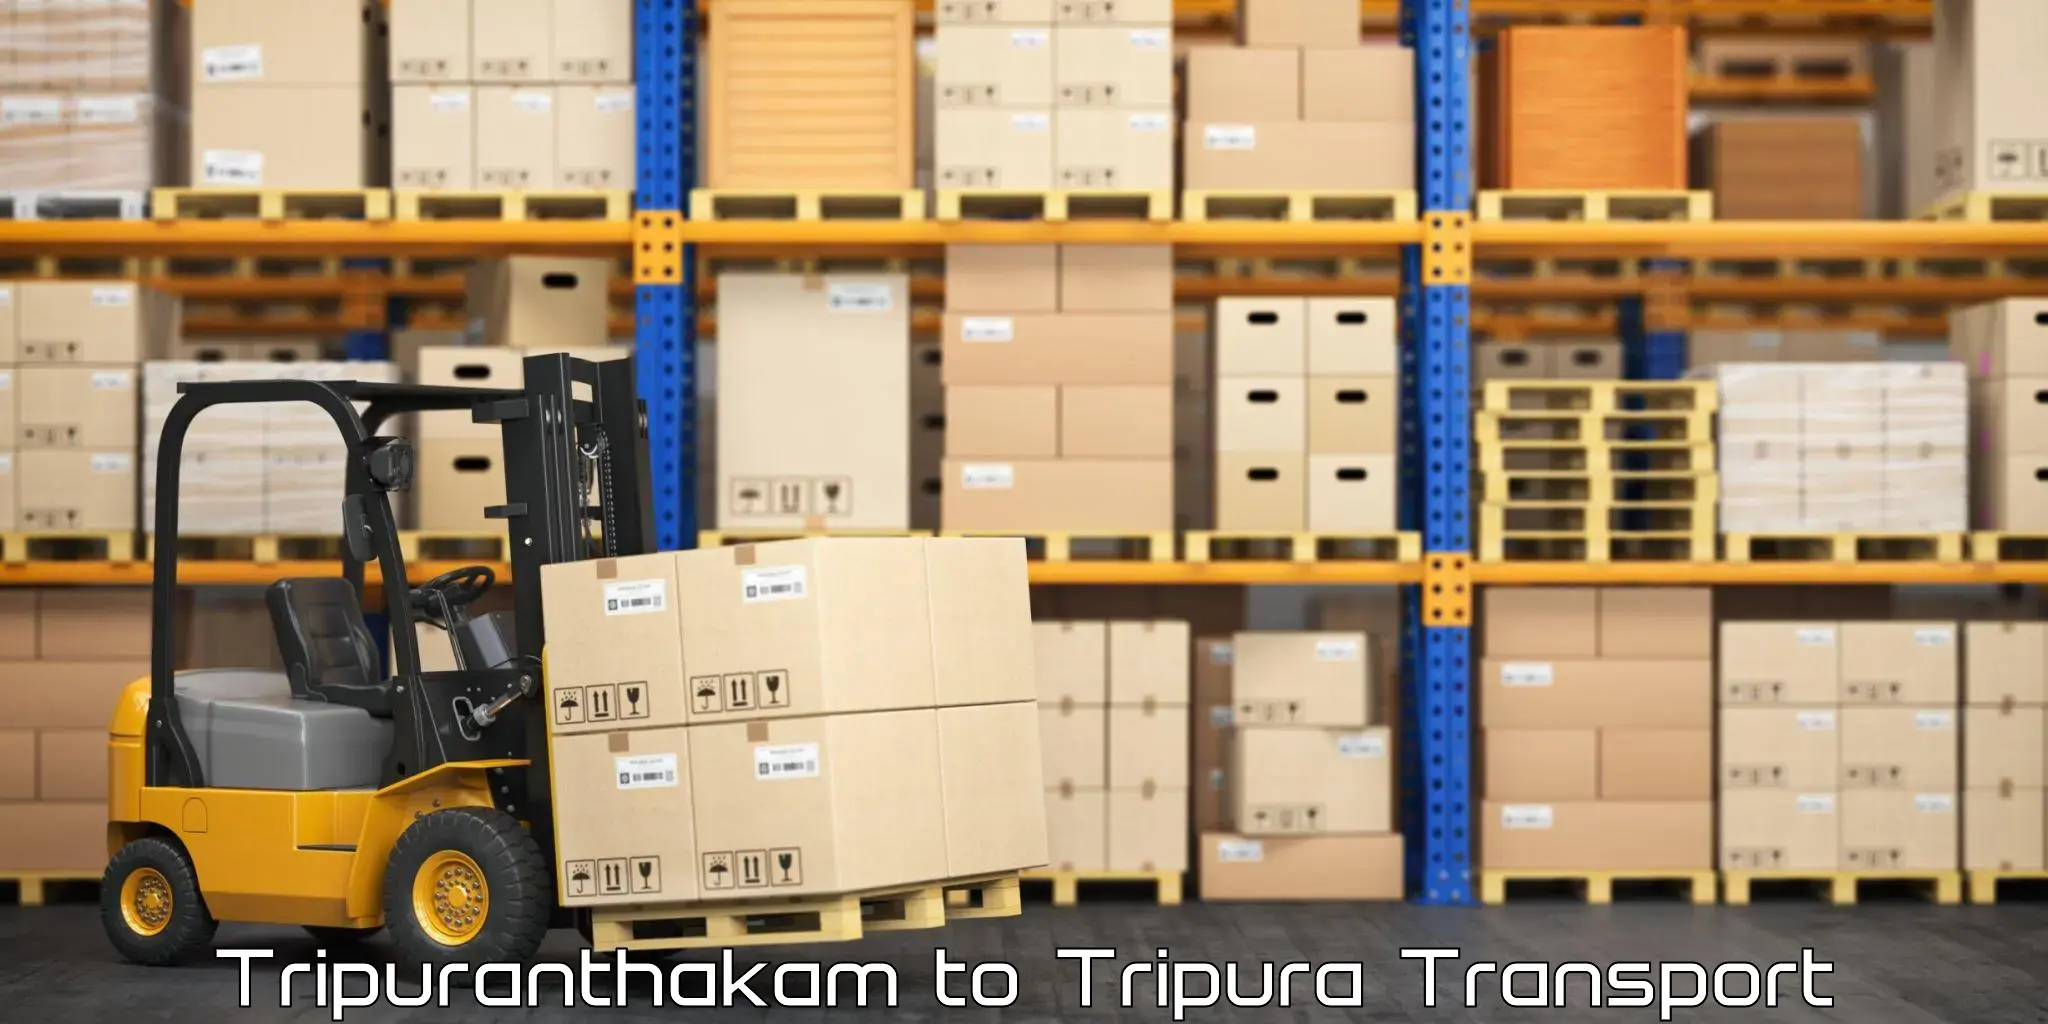 Intercity goods transport in Tripuranthakam to Kailashahar